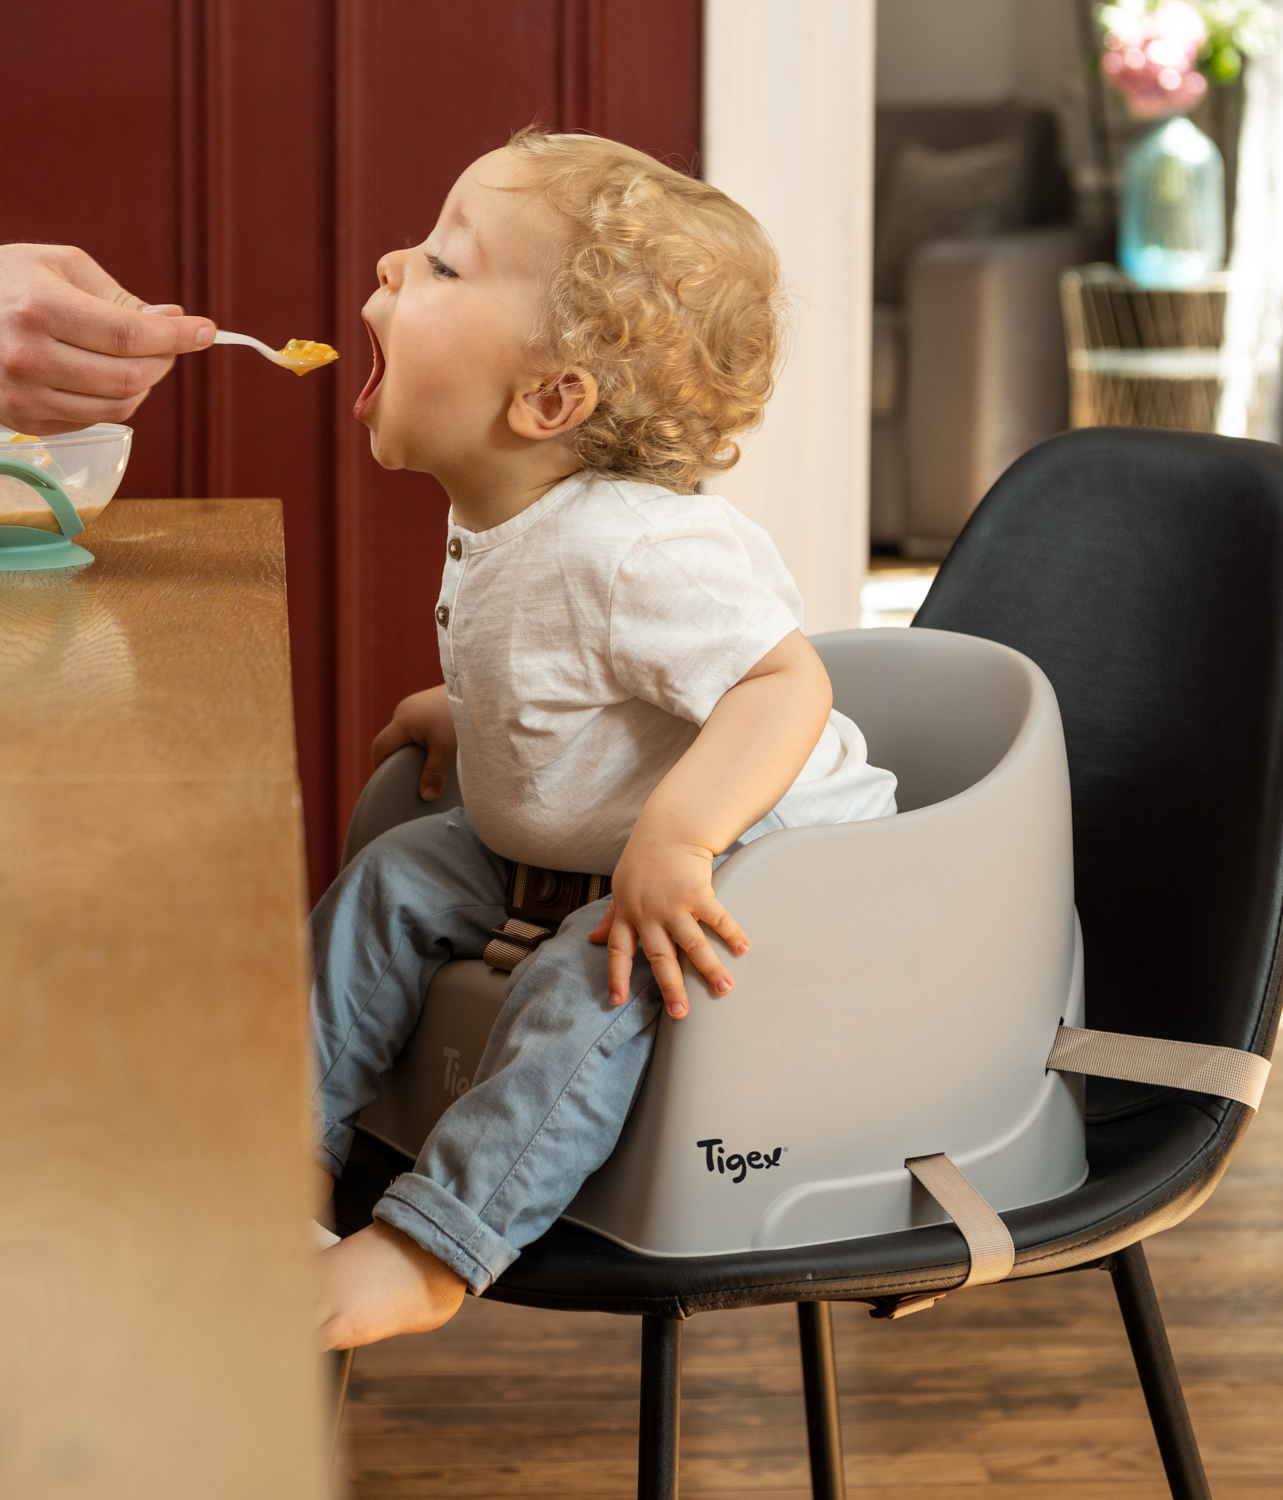 Rehausseur de chaise : lequel acheter ? - Blog bébé